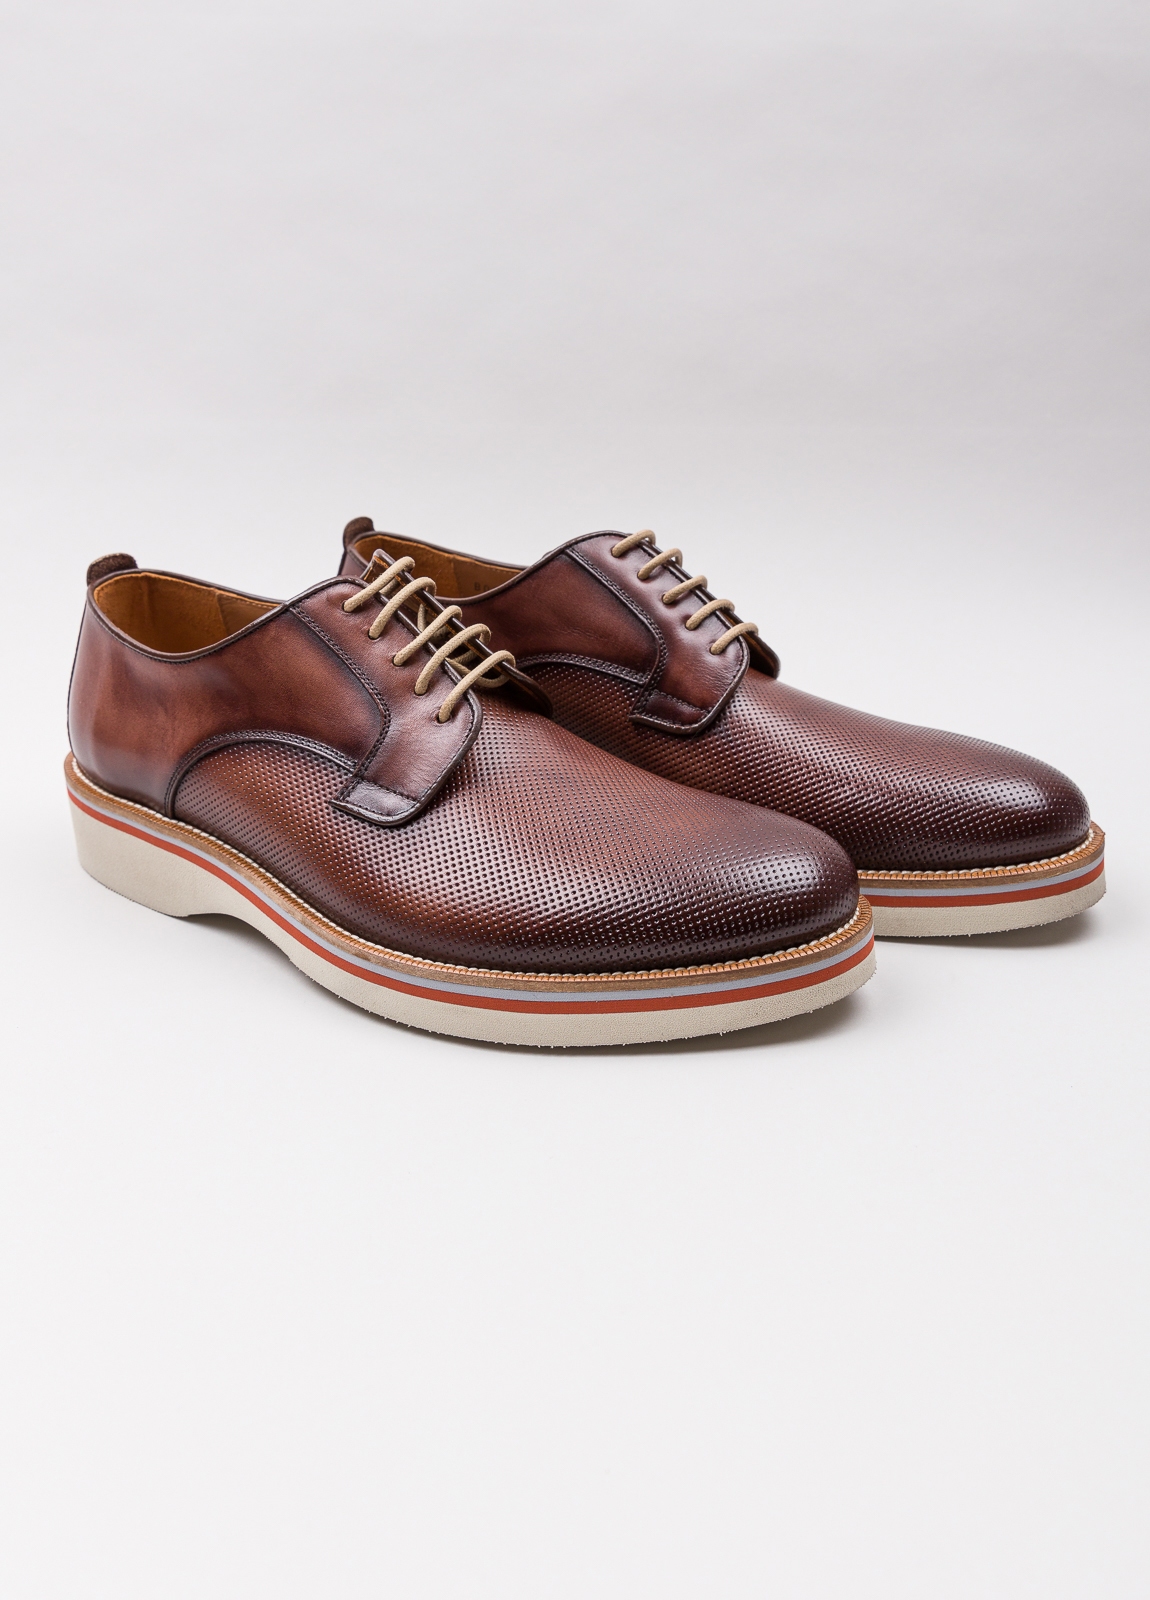 Zapato sport wear furest colección troquelado marrón - Ítem2